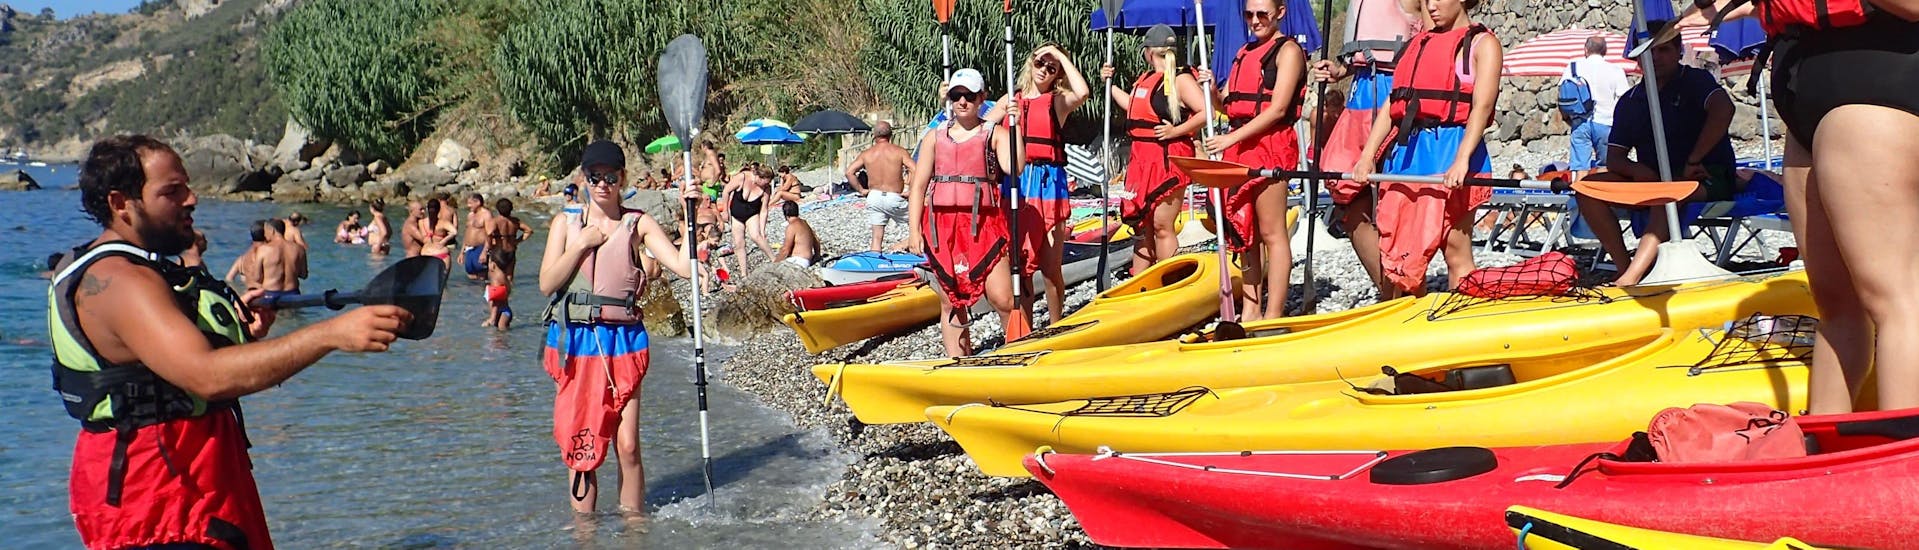 L'istruttore spiega le misure di sicurezza per il Escursione in Kayak a Punta Campanella nella Baia di Ieranto con Marea Outdoors Nerano.